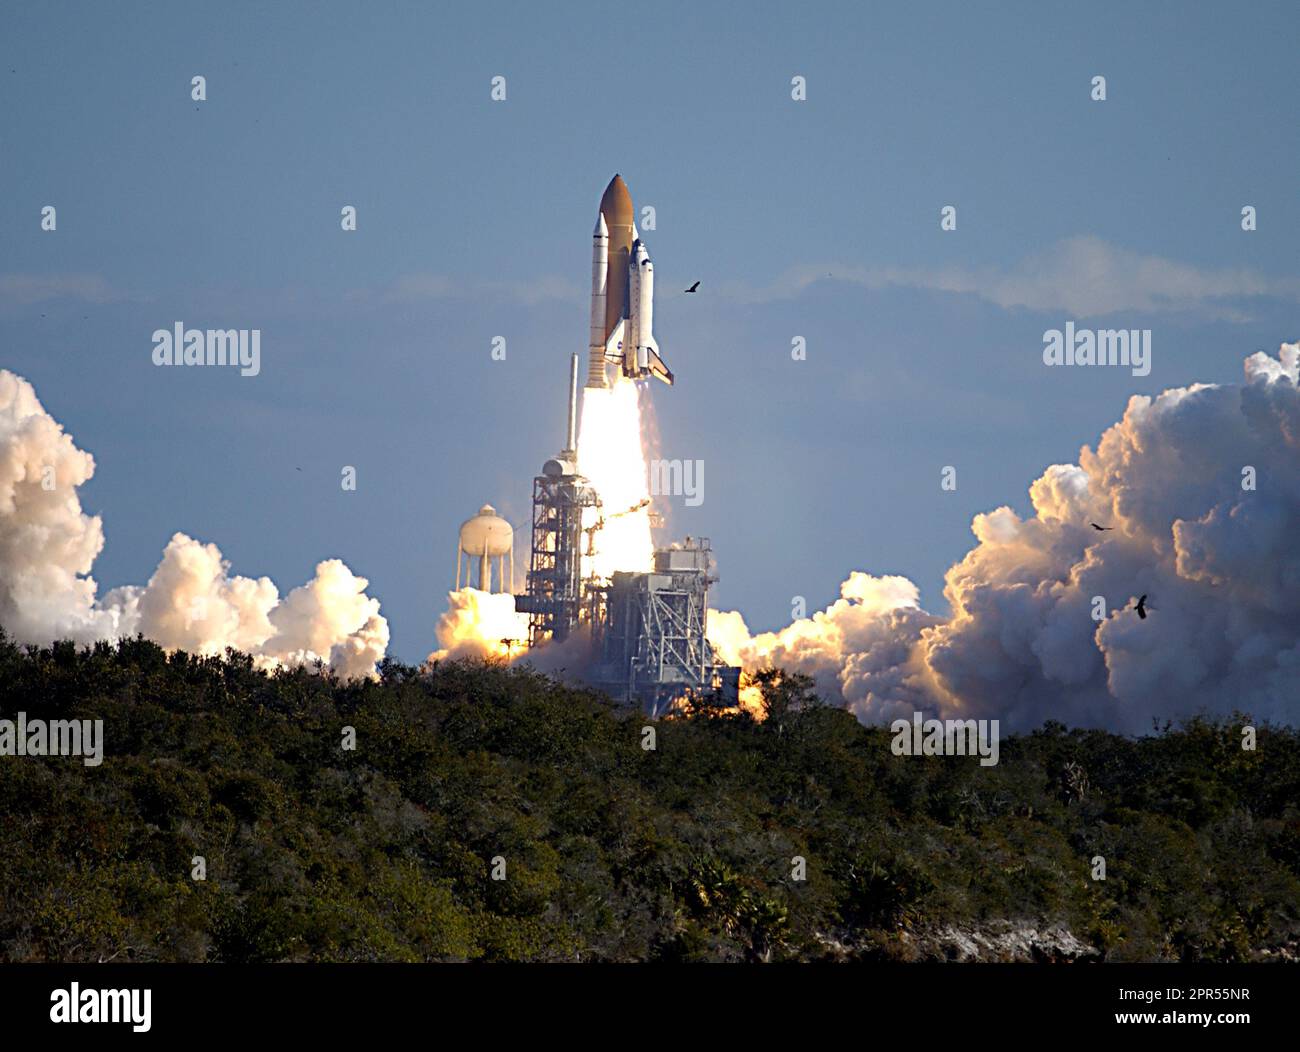 Attraverso un cielo blu nuvolato sopra il Launch Pad 39A, lo Space Shuttle Columbia si lancia verso lo spazio sulla missione STS-107. Dopo il conto alla rovescia, il liftoff si è verificato in tempo alle 10:39 EST. Gli esperimenti nel modulo SPACEHAB spaziavano dalle scienze materiali alle scienze della vita. Foto Stock